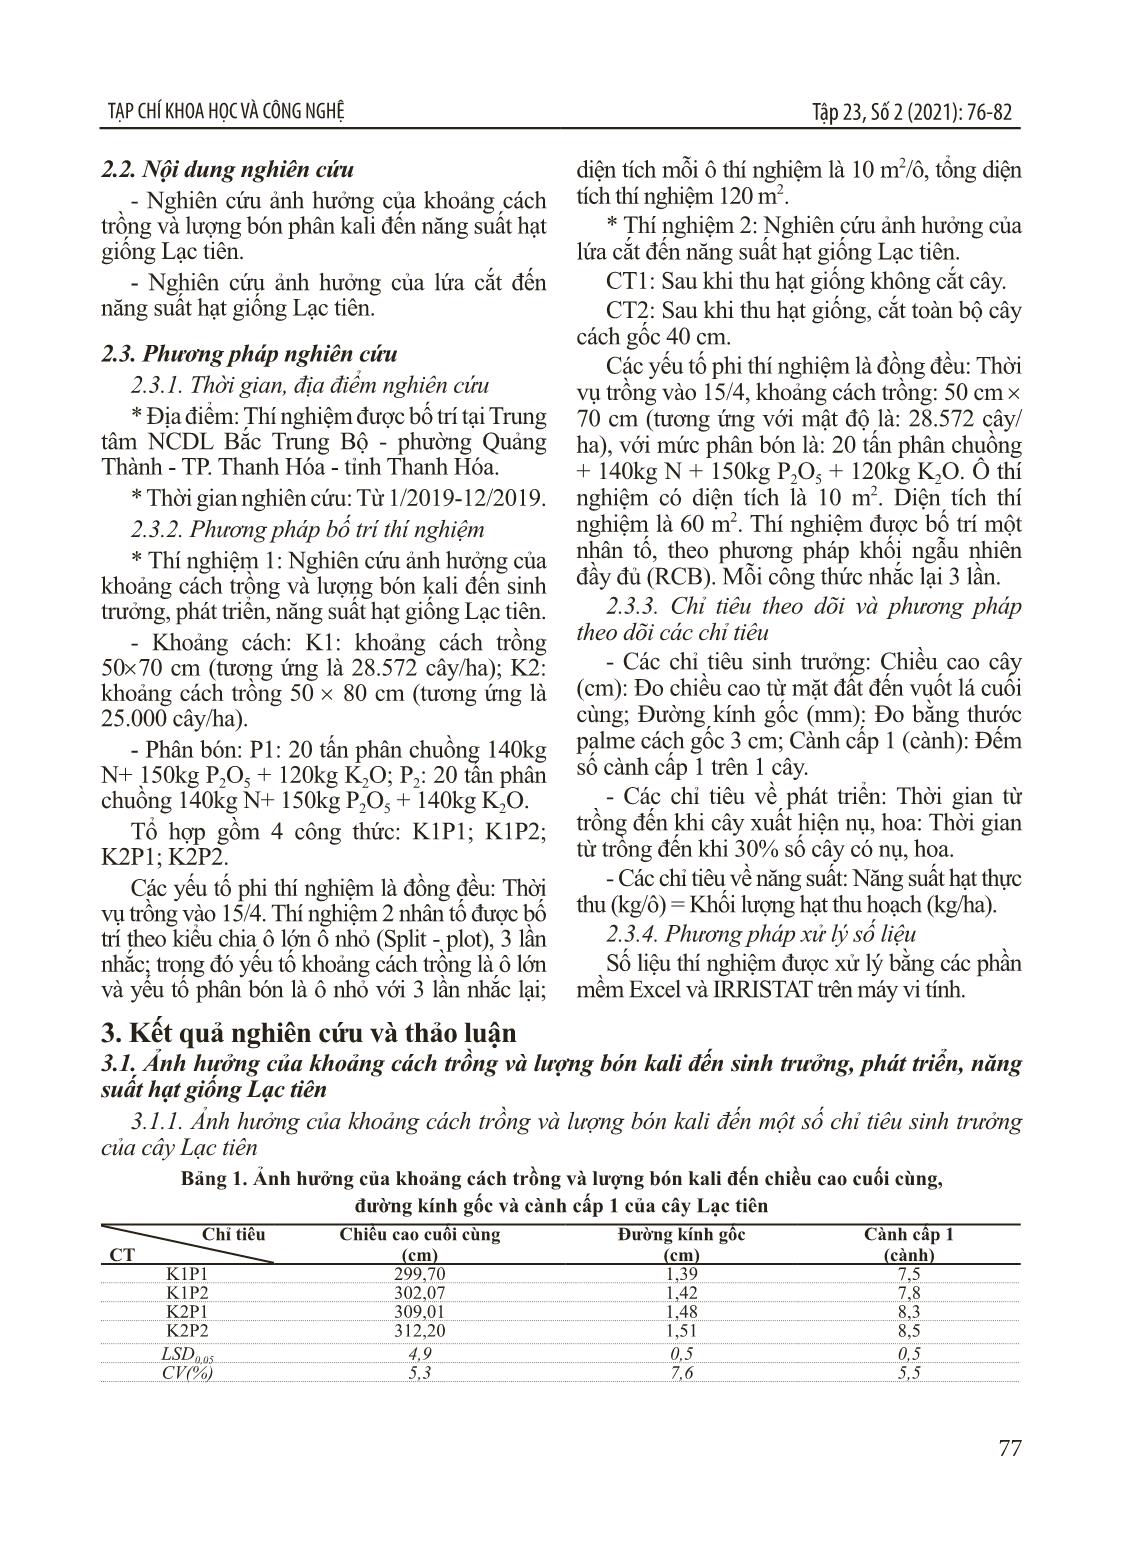 Nghiên cứu xây dựng quy trình sản xuất hạt giống lạc tiên (Passiflora foetida L.) tại Thanh Hóa trang 2